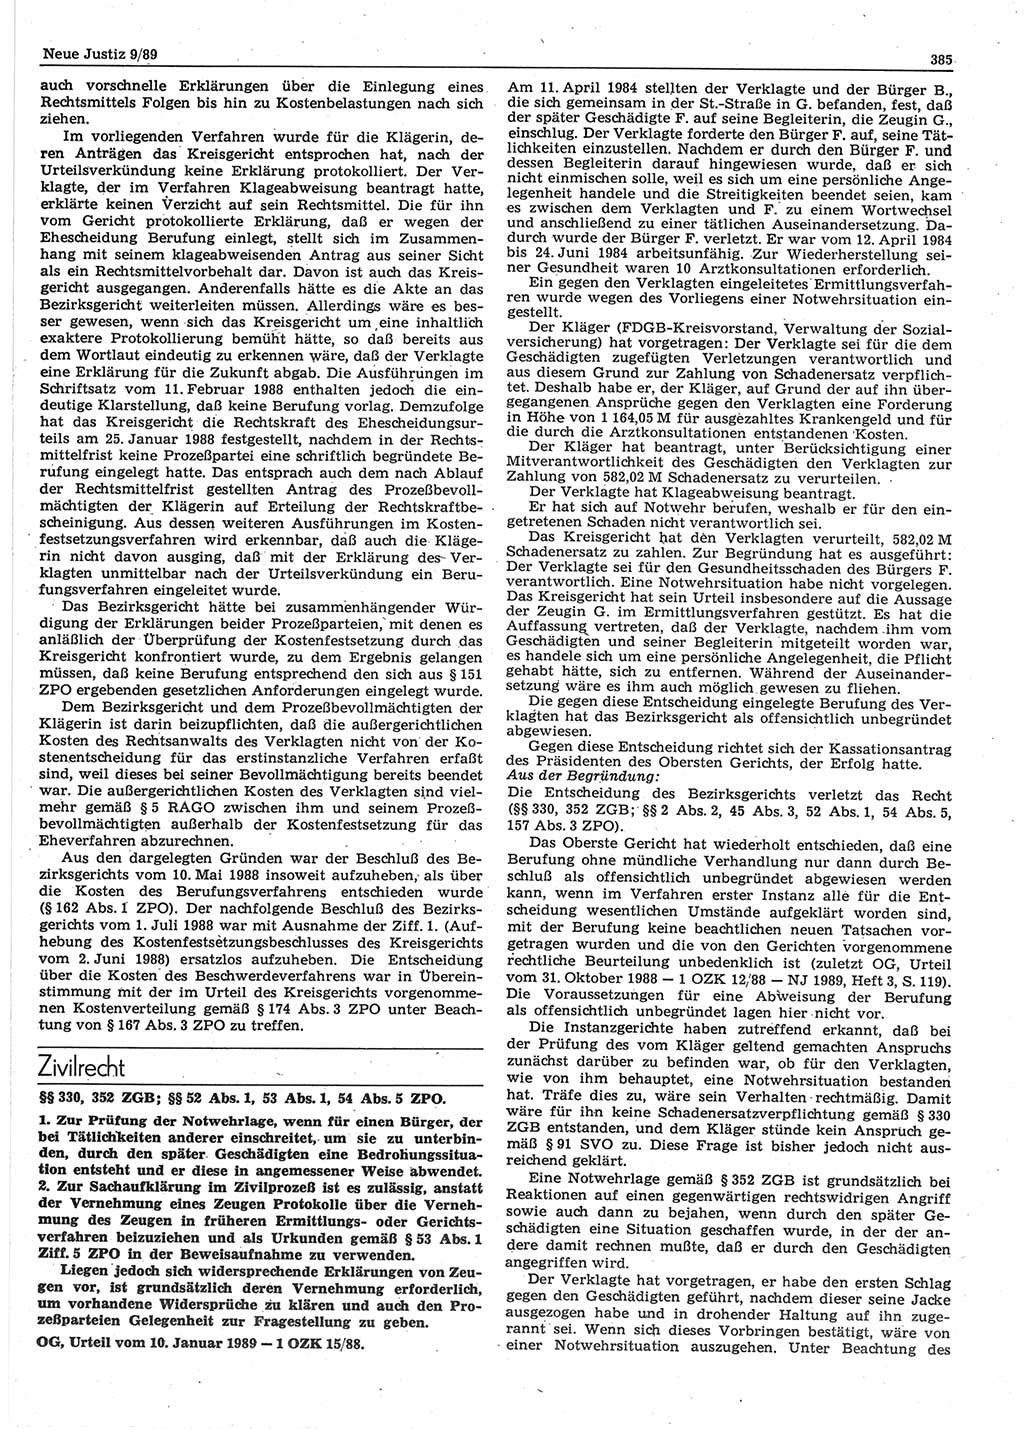 Neue Justiz (NJ), Zeitschrift für sozialistisches Recht und Gesetzlichkeit [Deutsche Demokratische Republik (DDR)], 43. Jahrgang 1989, Seite 385 (NJ DDR 1989, S. 385)